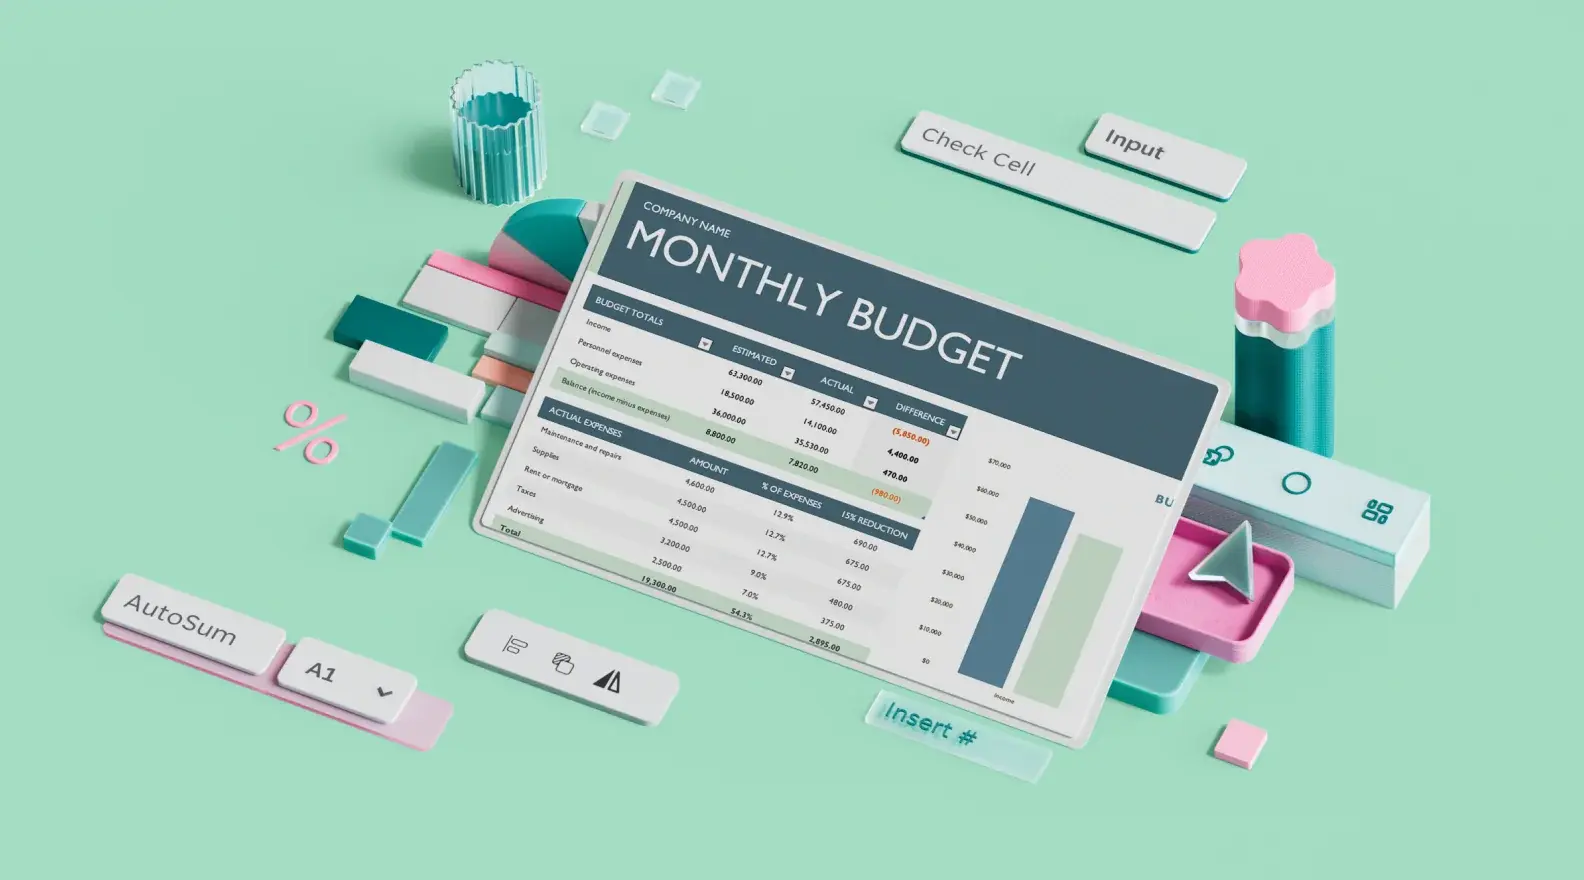 Microsoft Excelova predloga mesečnega poslovnega proračuna, obkrožena s 3D-elementi načrta